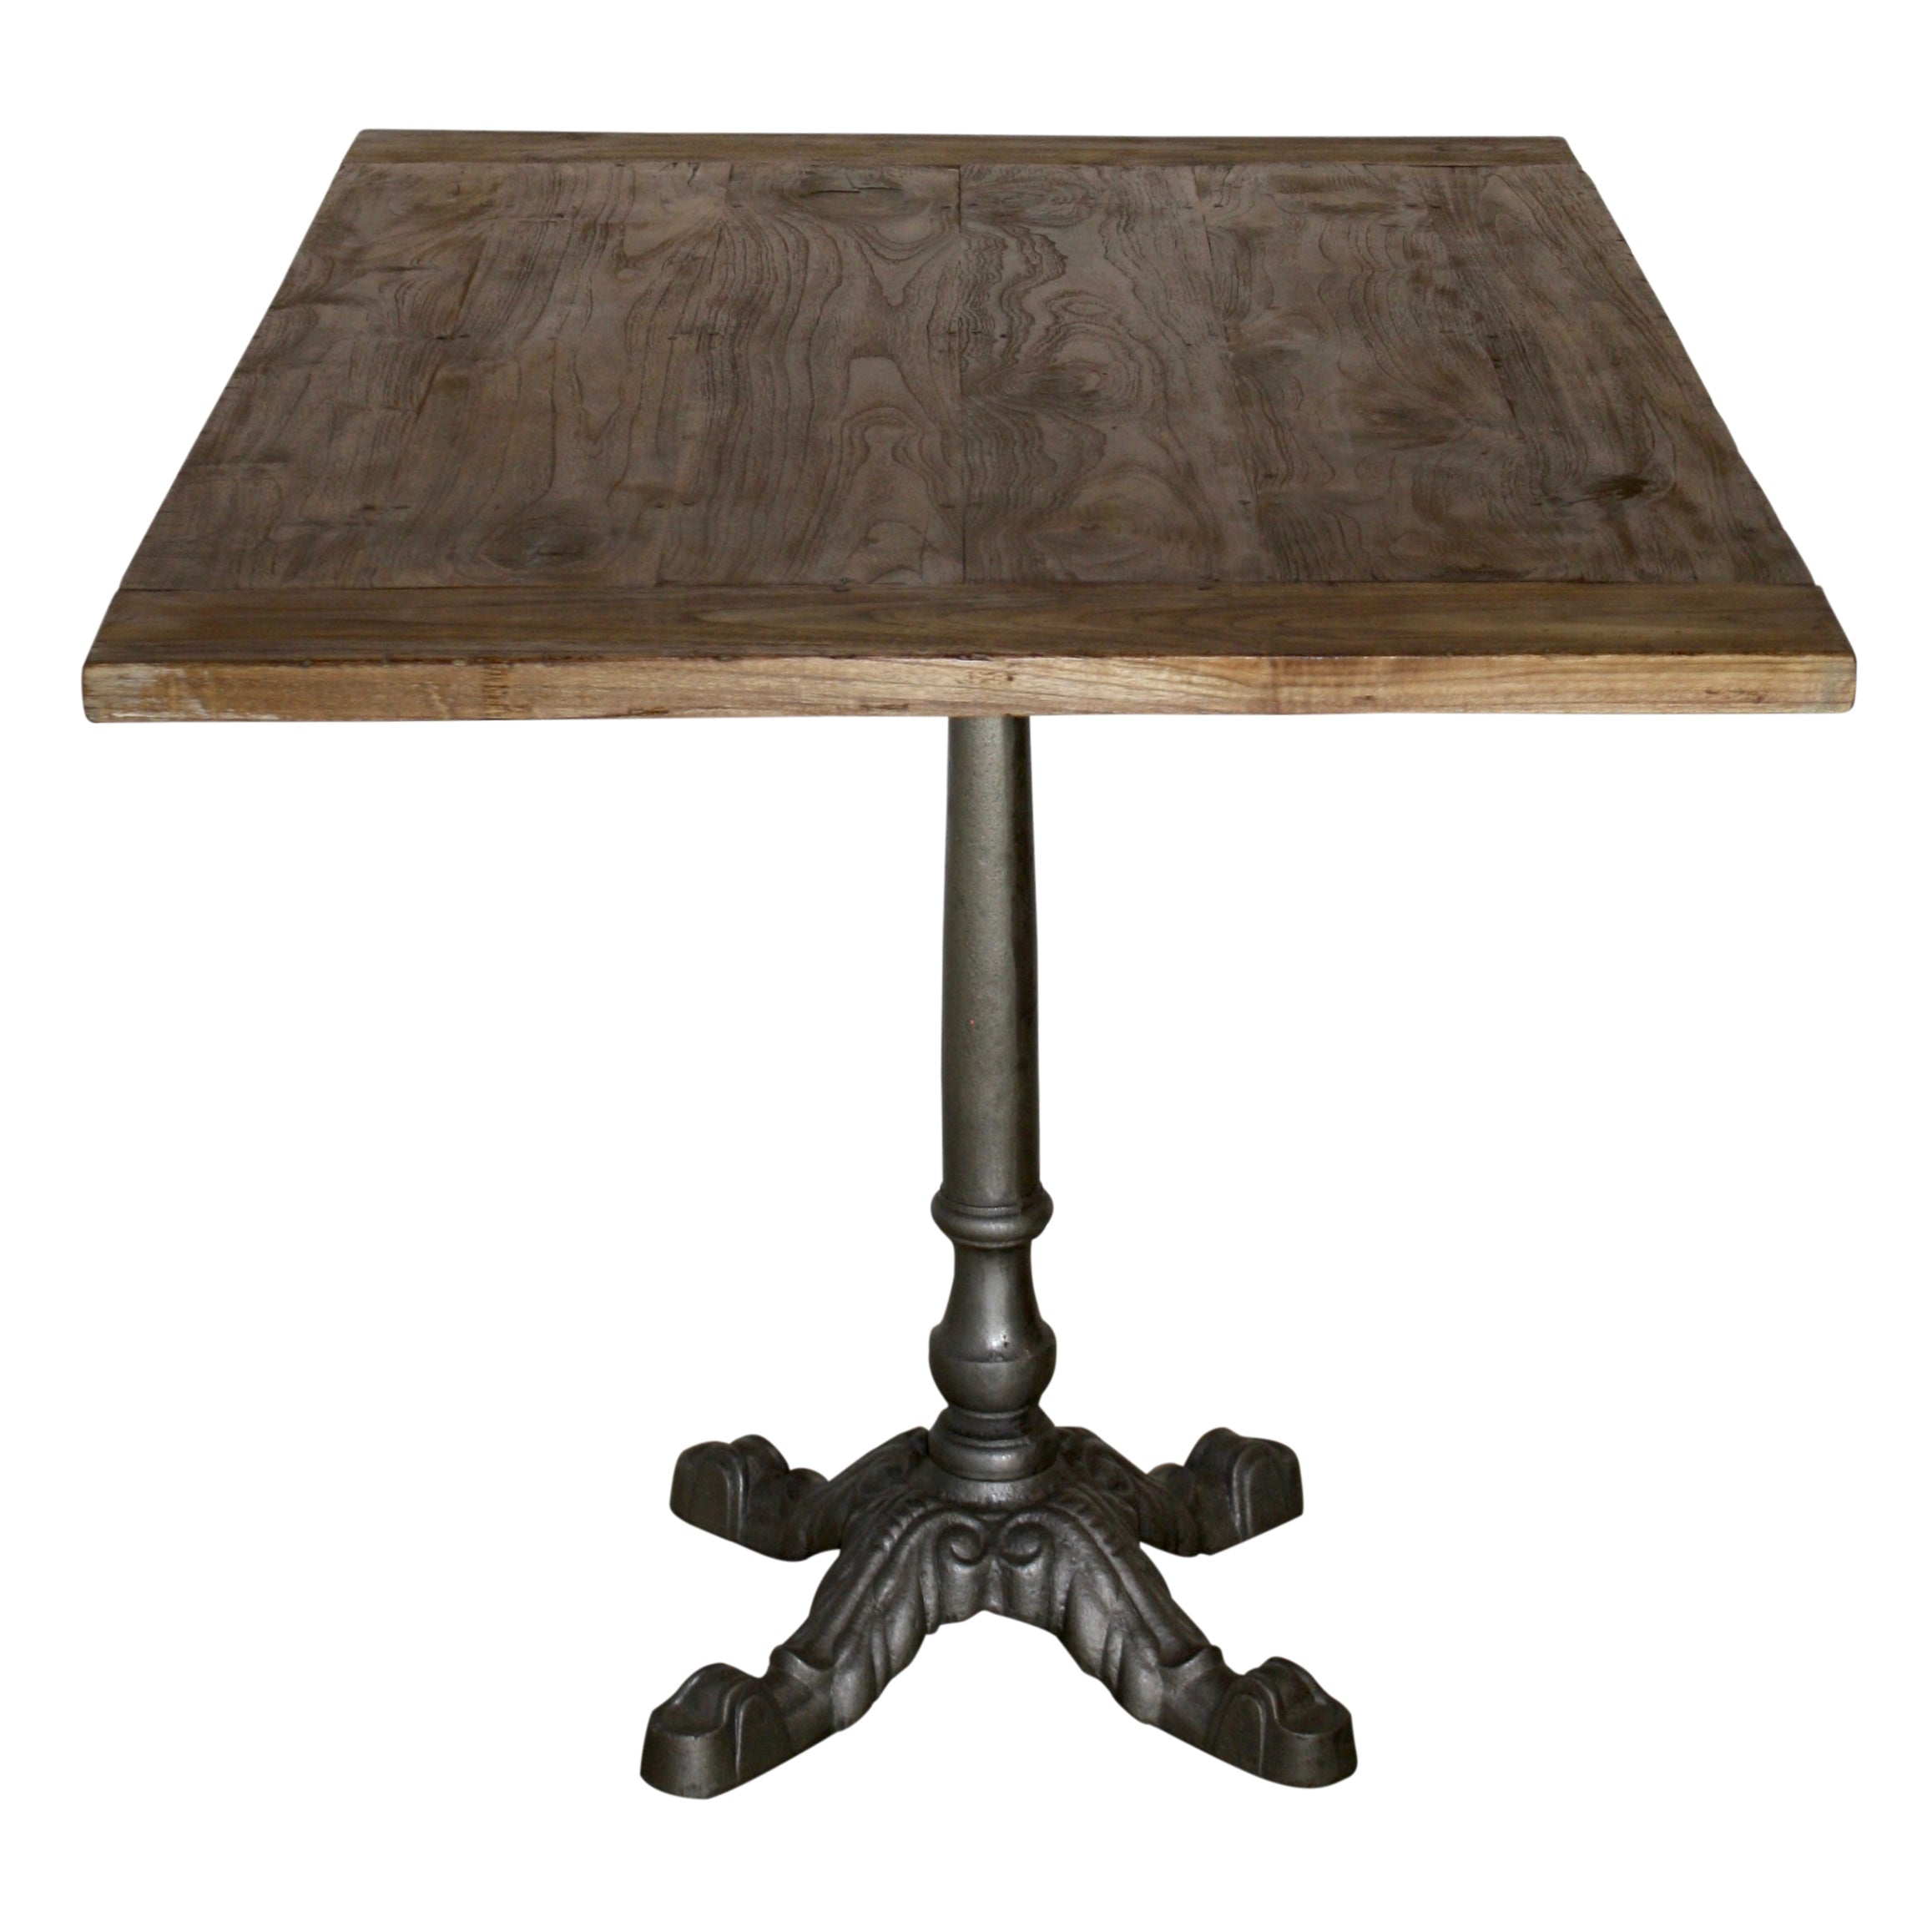 Rectangular Teak Table with Metal Pedestal Base